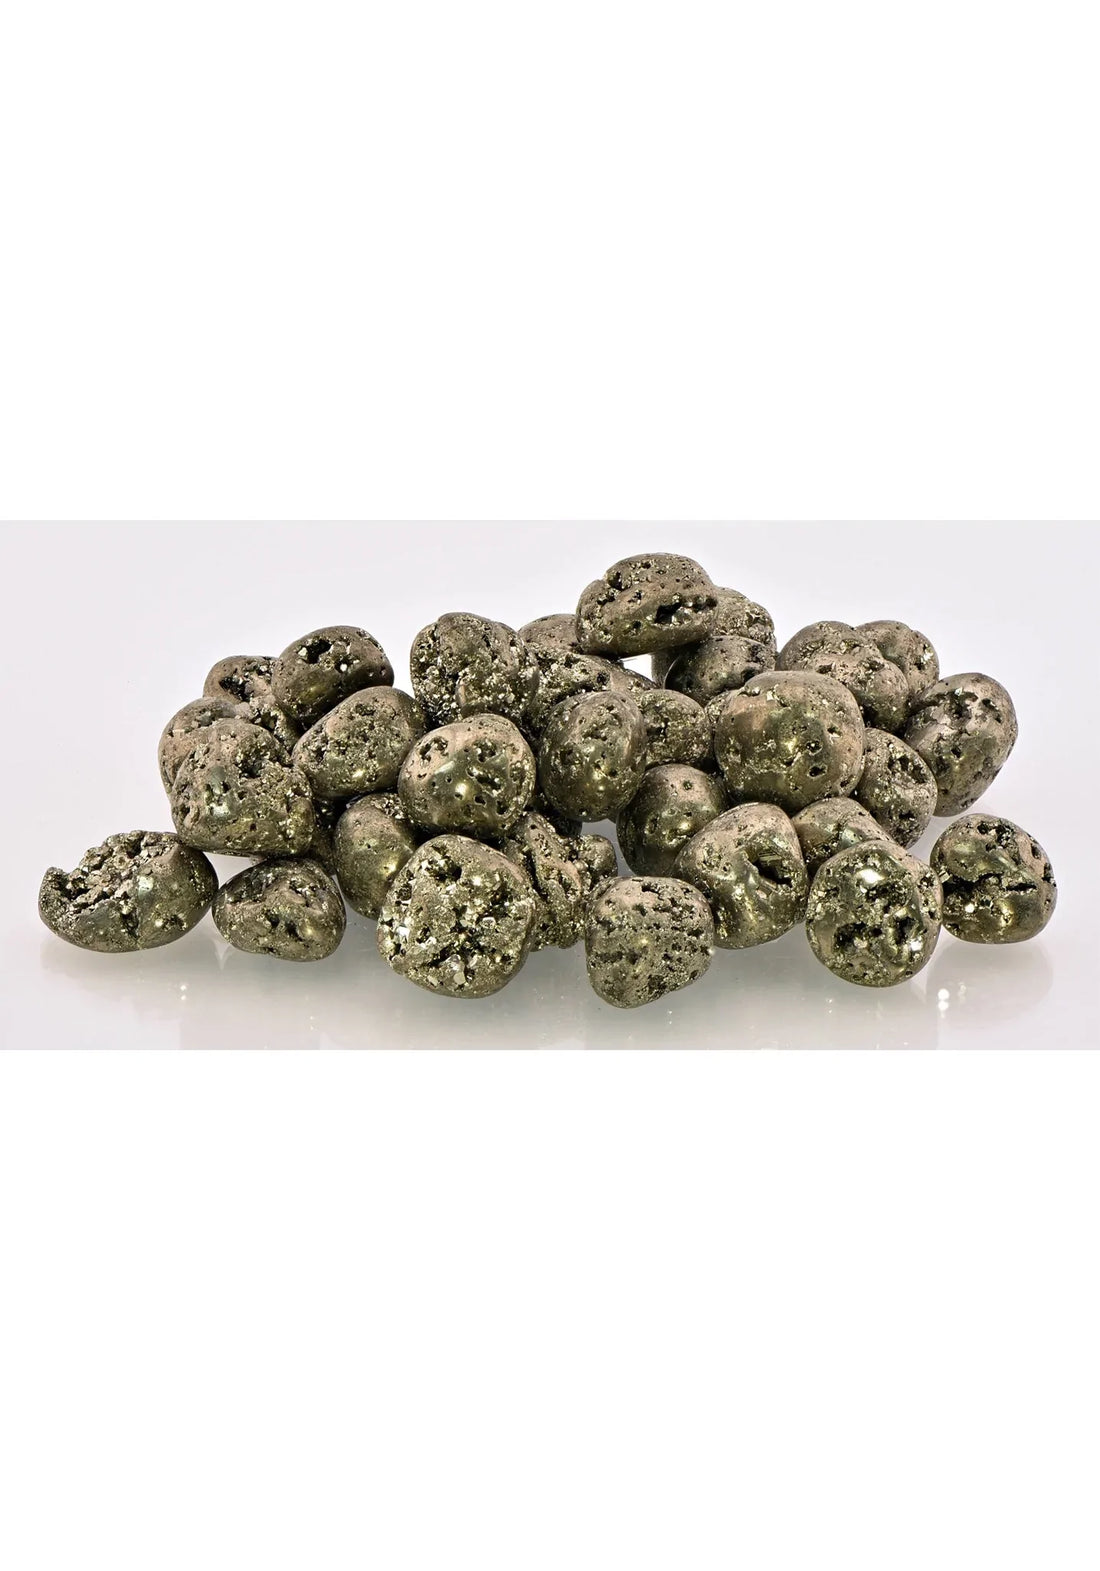 Pyrite Tumbled Gemstone - Multiple Sizes!